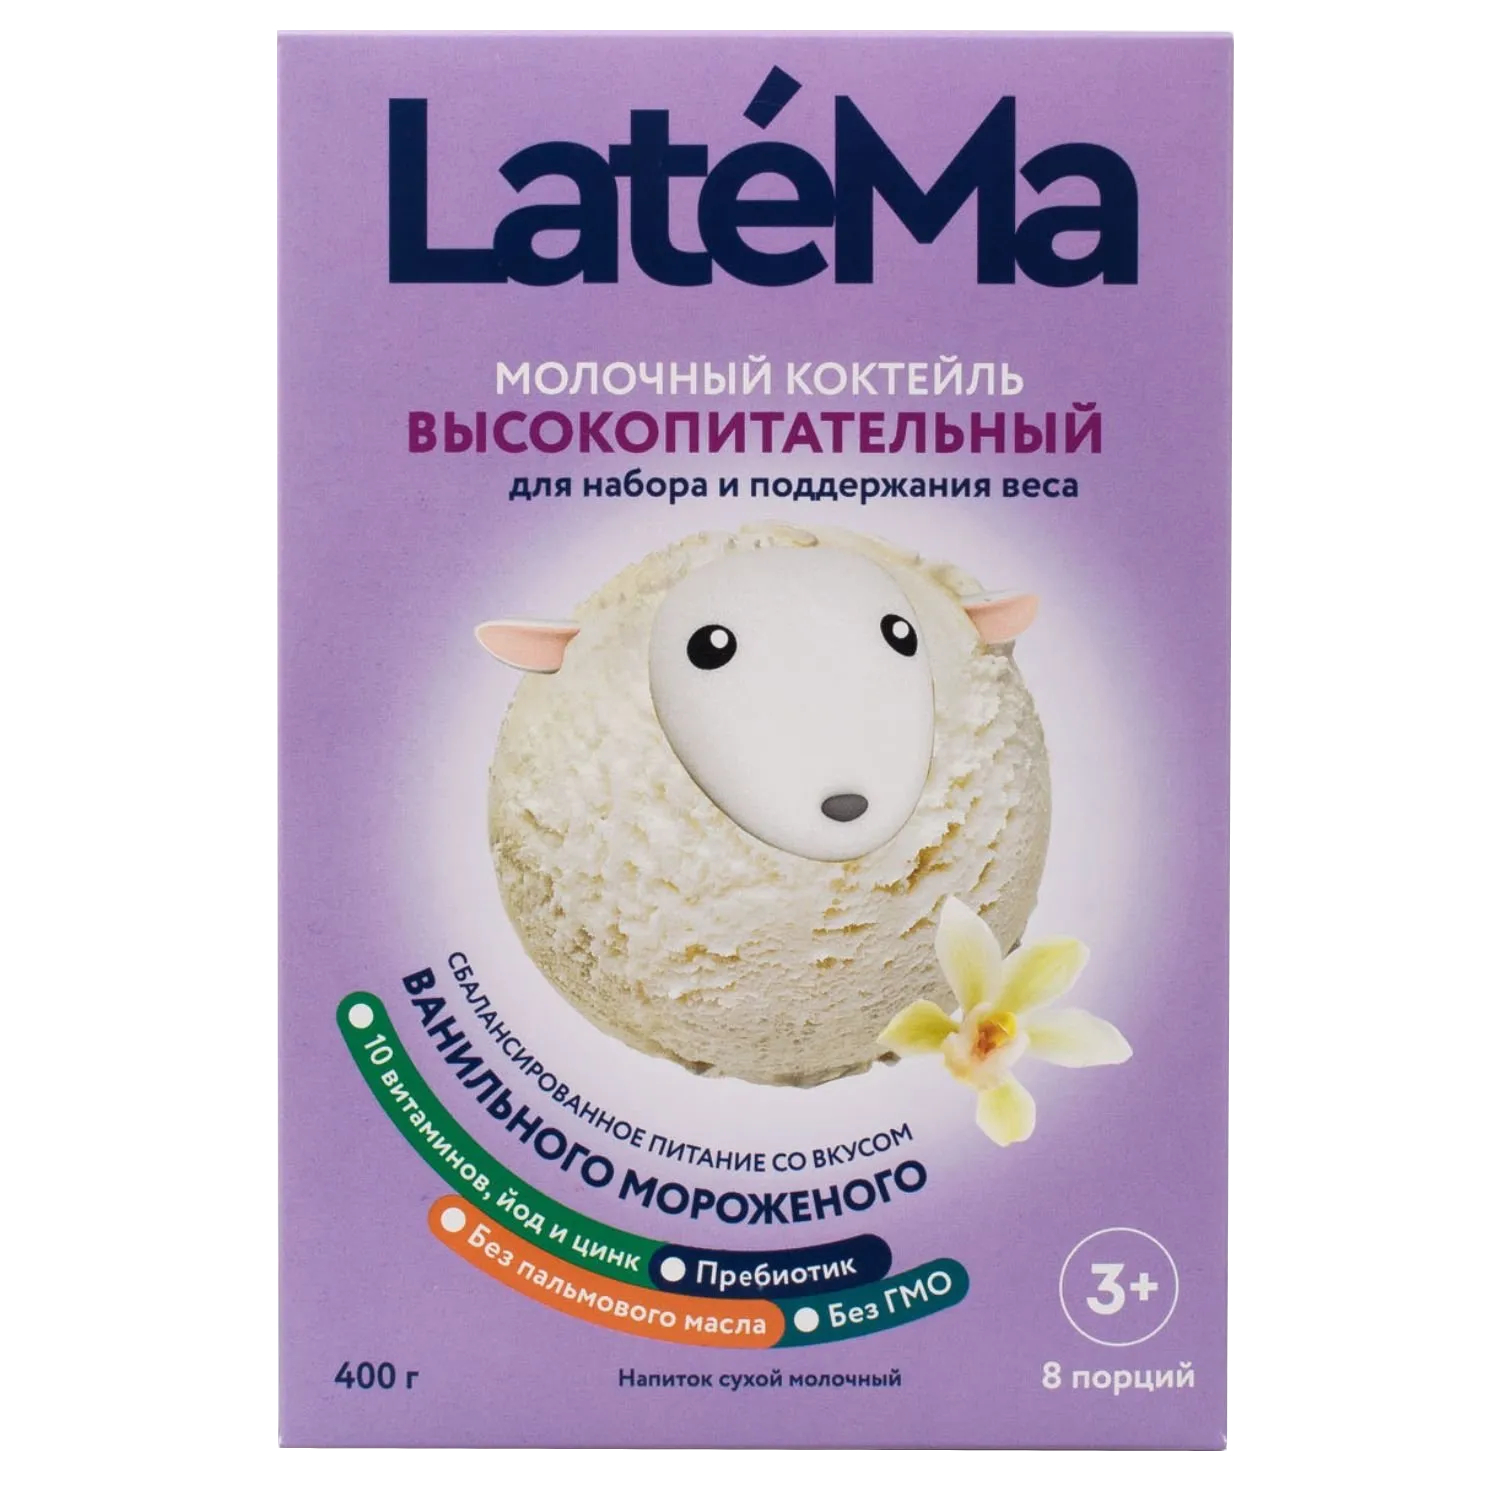 Смесь молочная сухая LateMa со вкусом ванильного мороженого, 400 г молочная смесь для приготовления коктейля latema высокопитательная для набора и поддержания веса со вкусом бананового мороженого